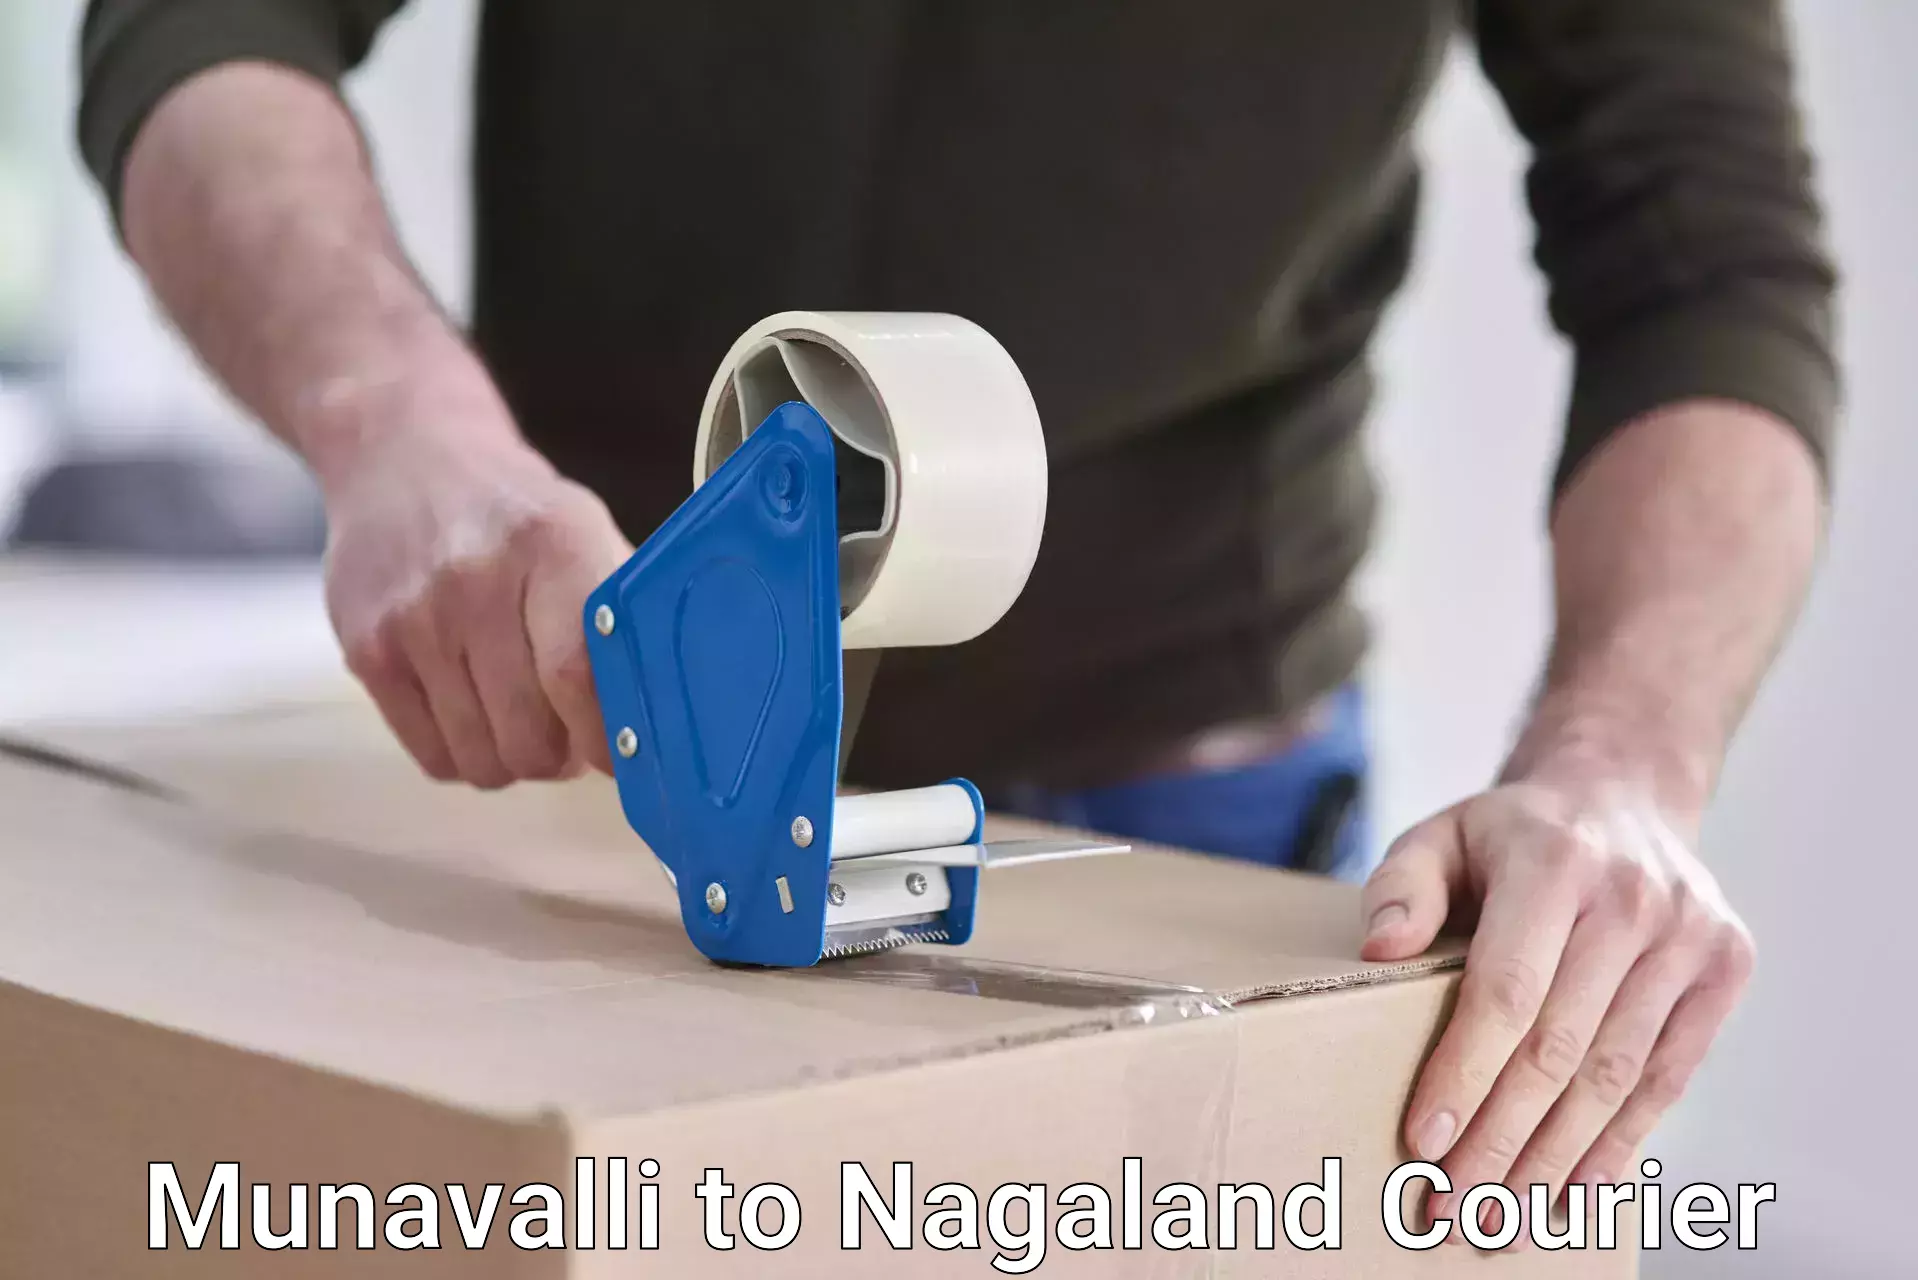 Advanced shipping technology Munavalli to NIT Nagaland